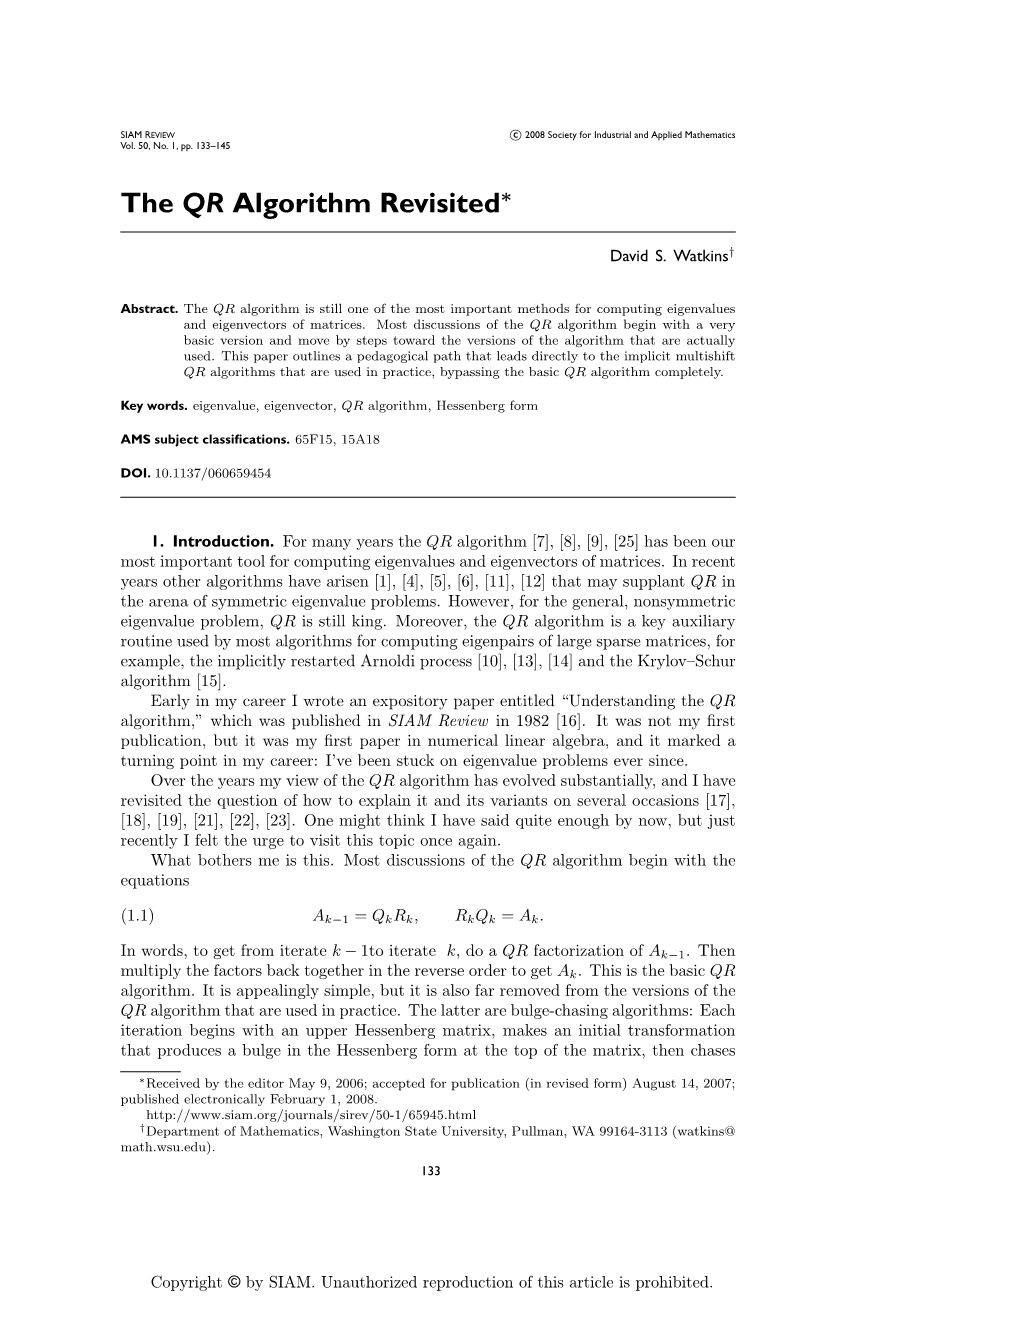 The QR Algorithm Revisited